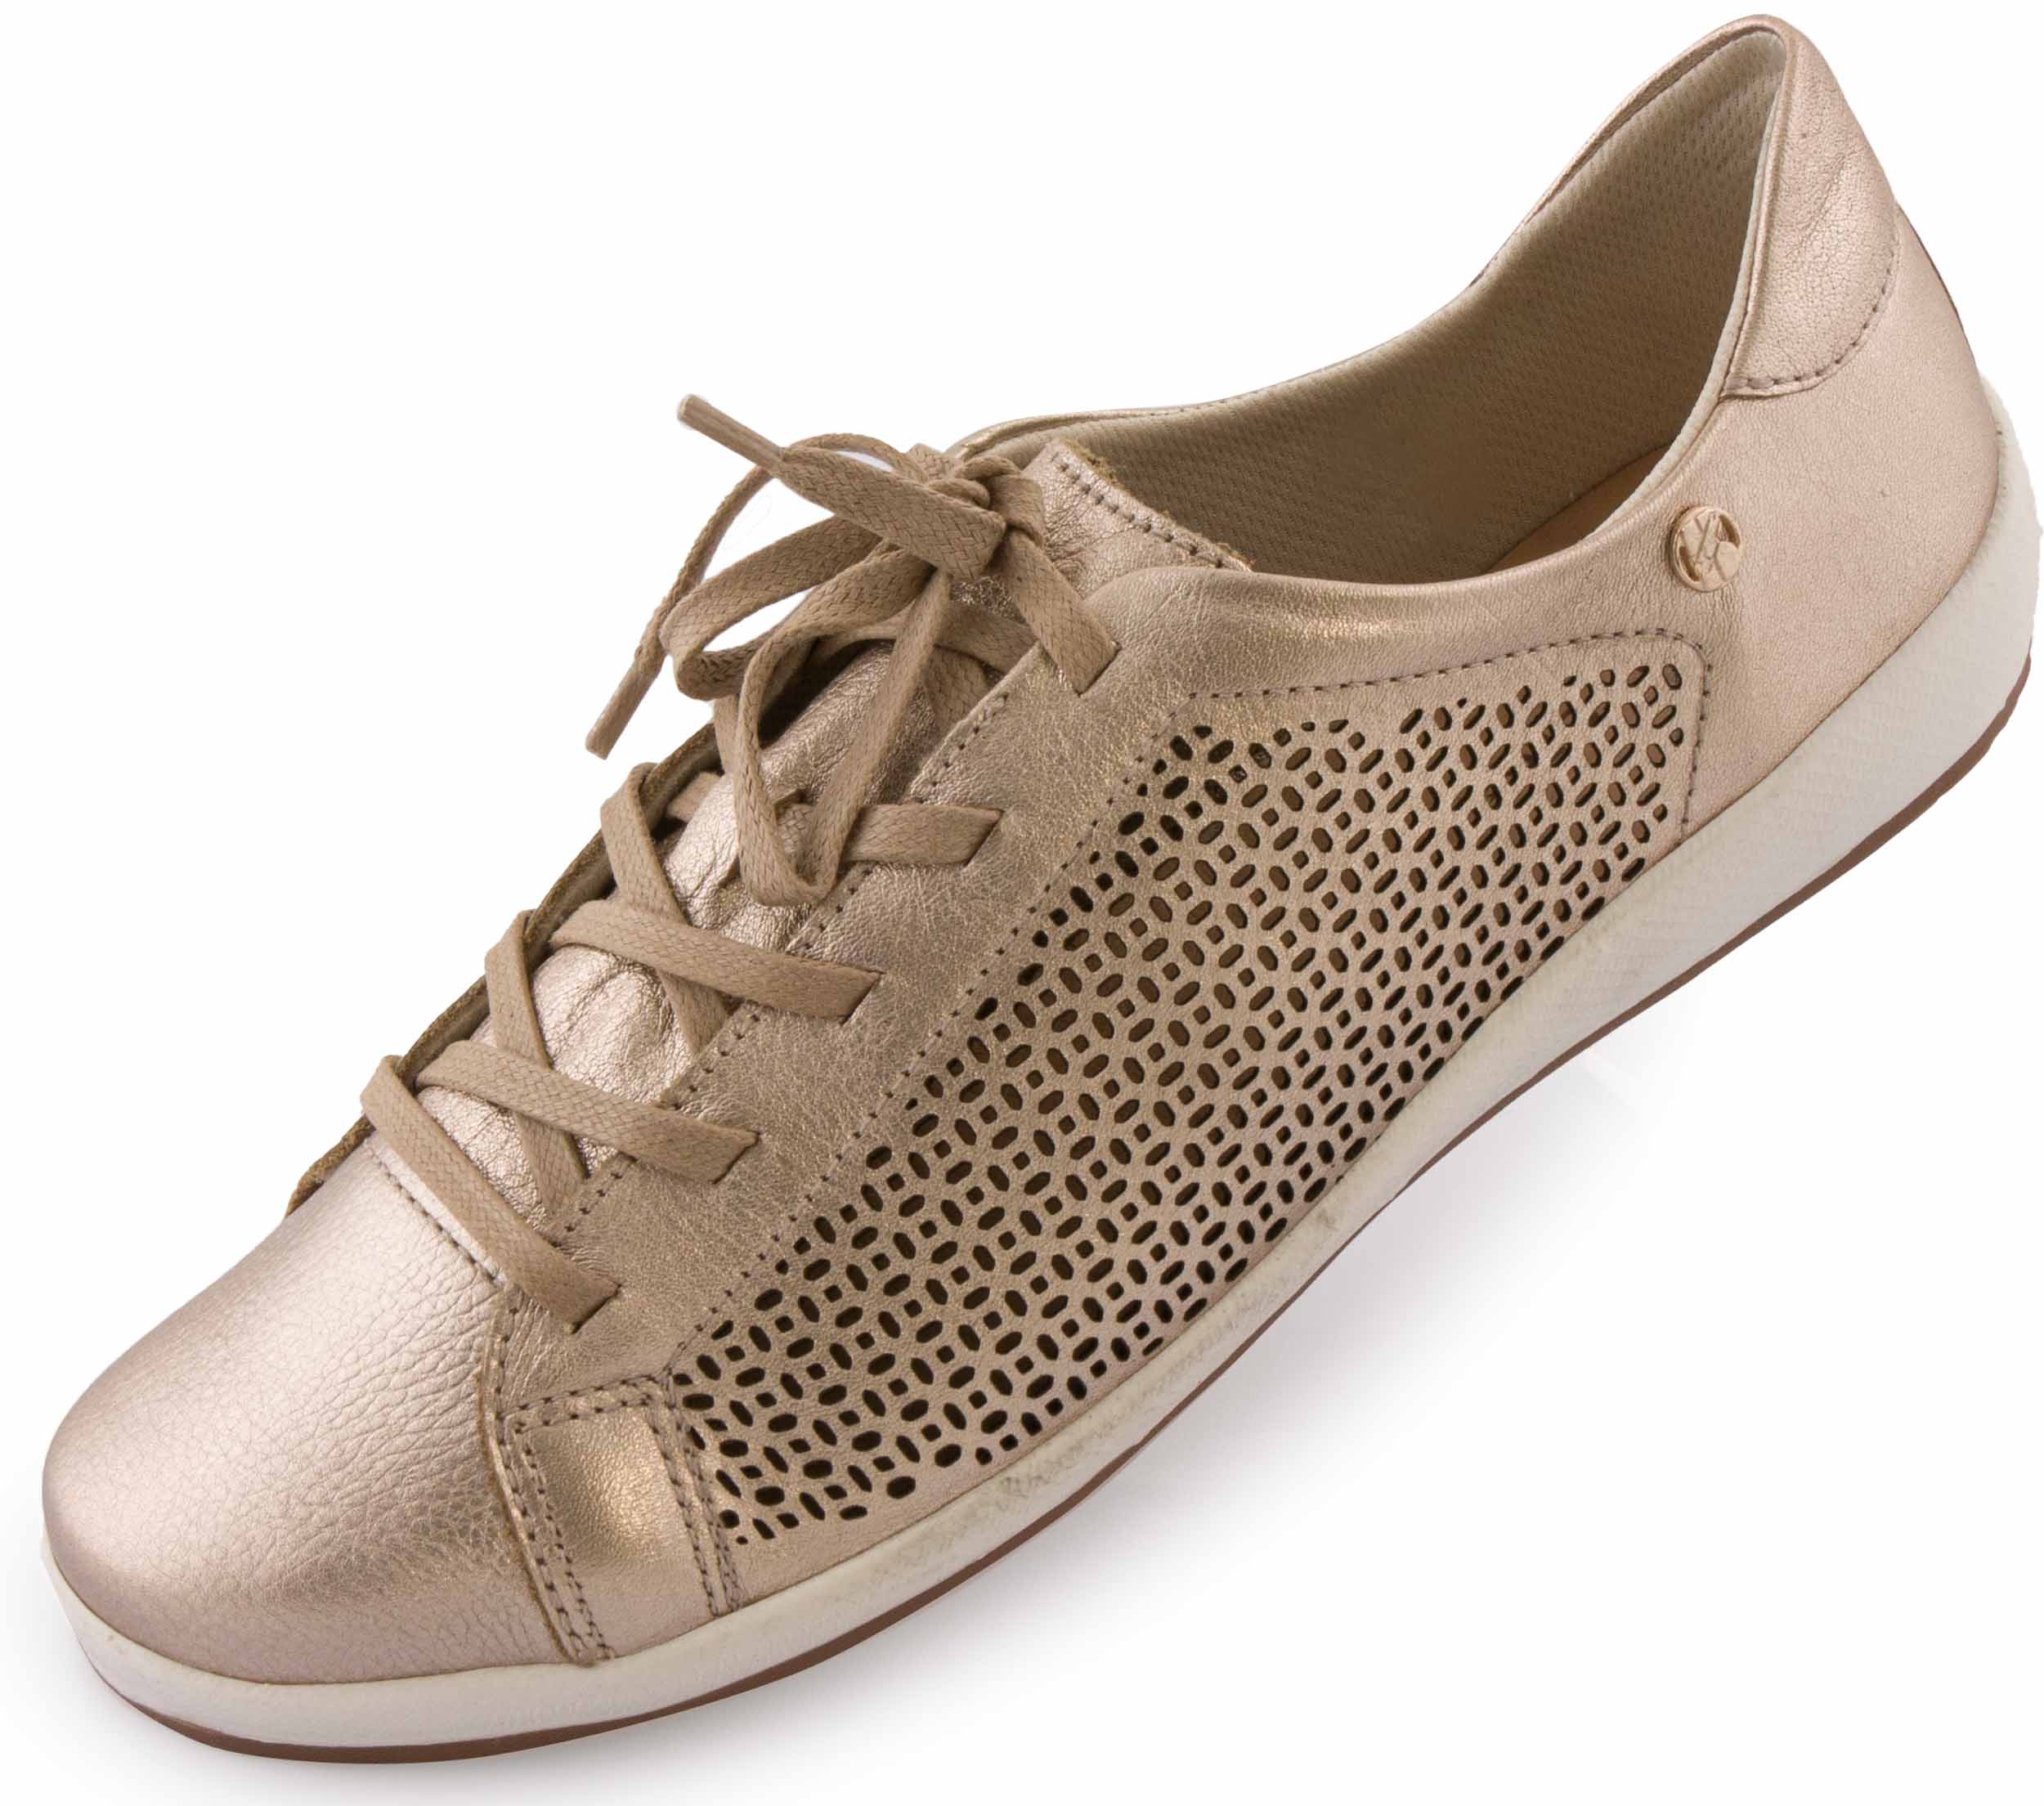 Dámské kožené boty Bottero Couro Metalizado|36